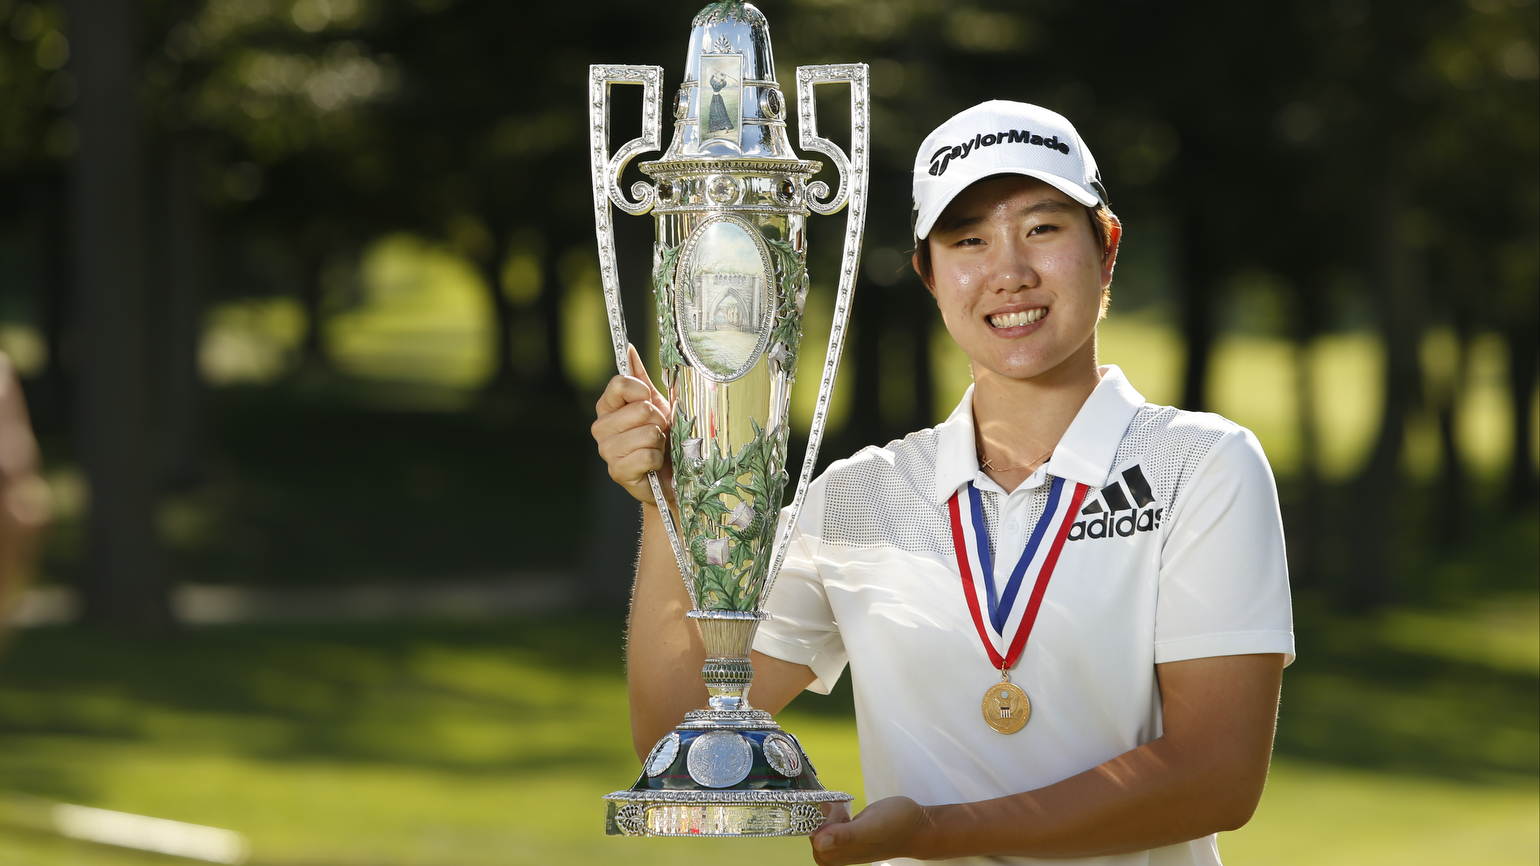 去年冠軍球員成恩貞(Eun Jeong Seong) 在同一年度拿下USGA的二項大賽勝利，包括本賽事，以及美國女子青少年錦標賽。